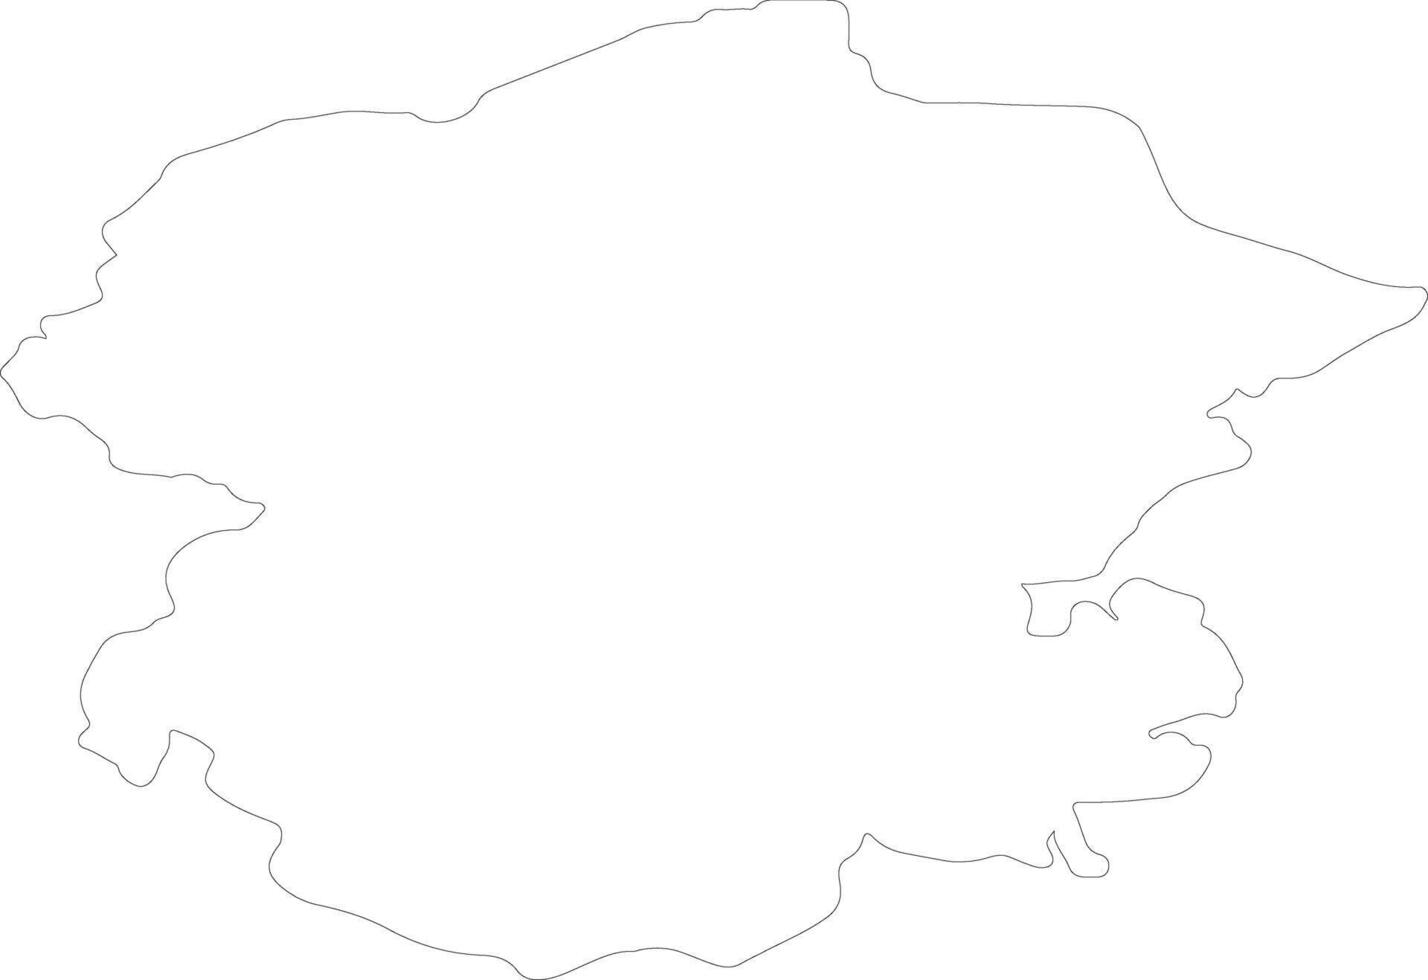 ciuvascio Russia schema carta geografica vettore